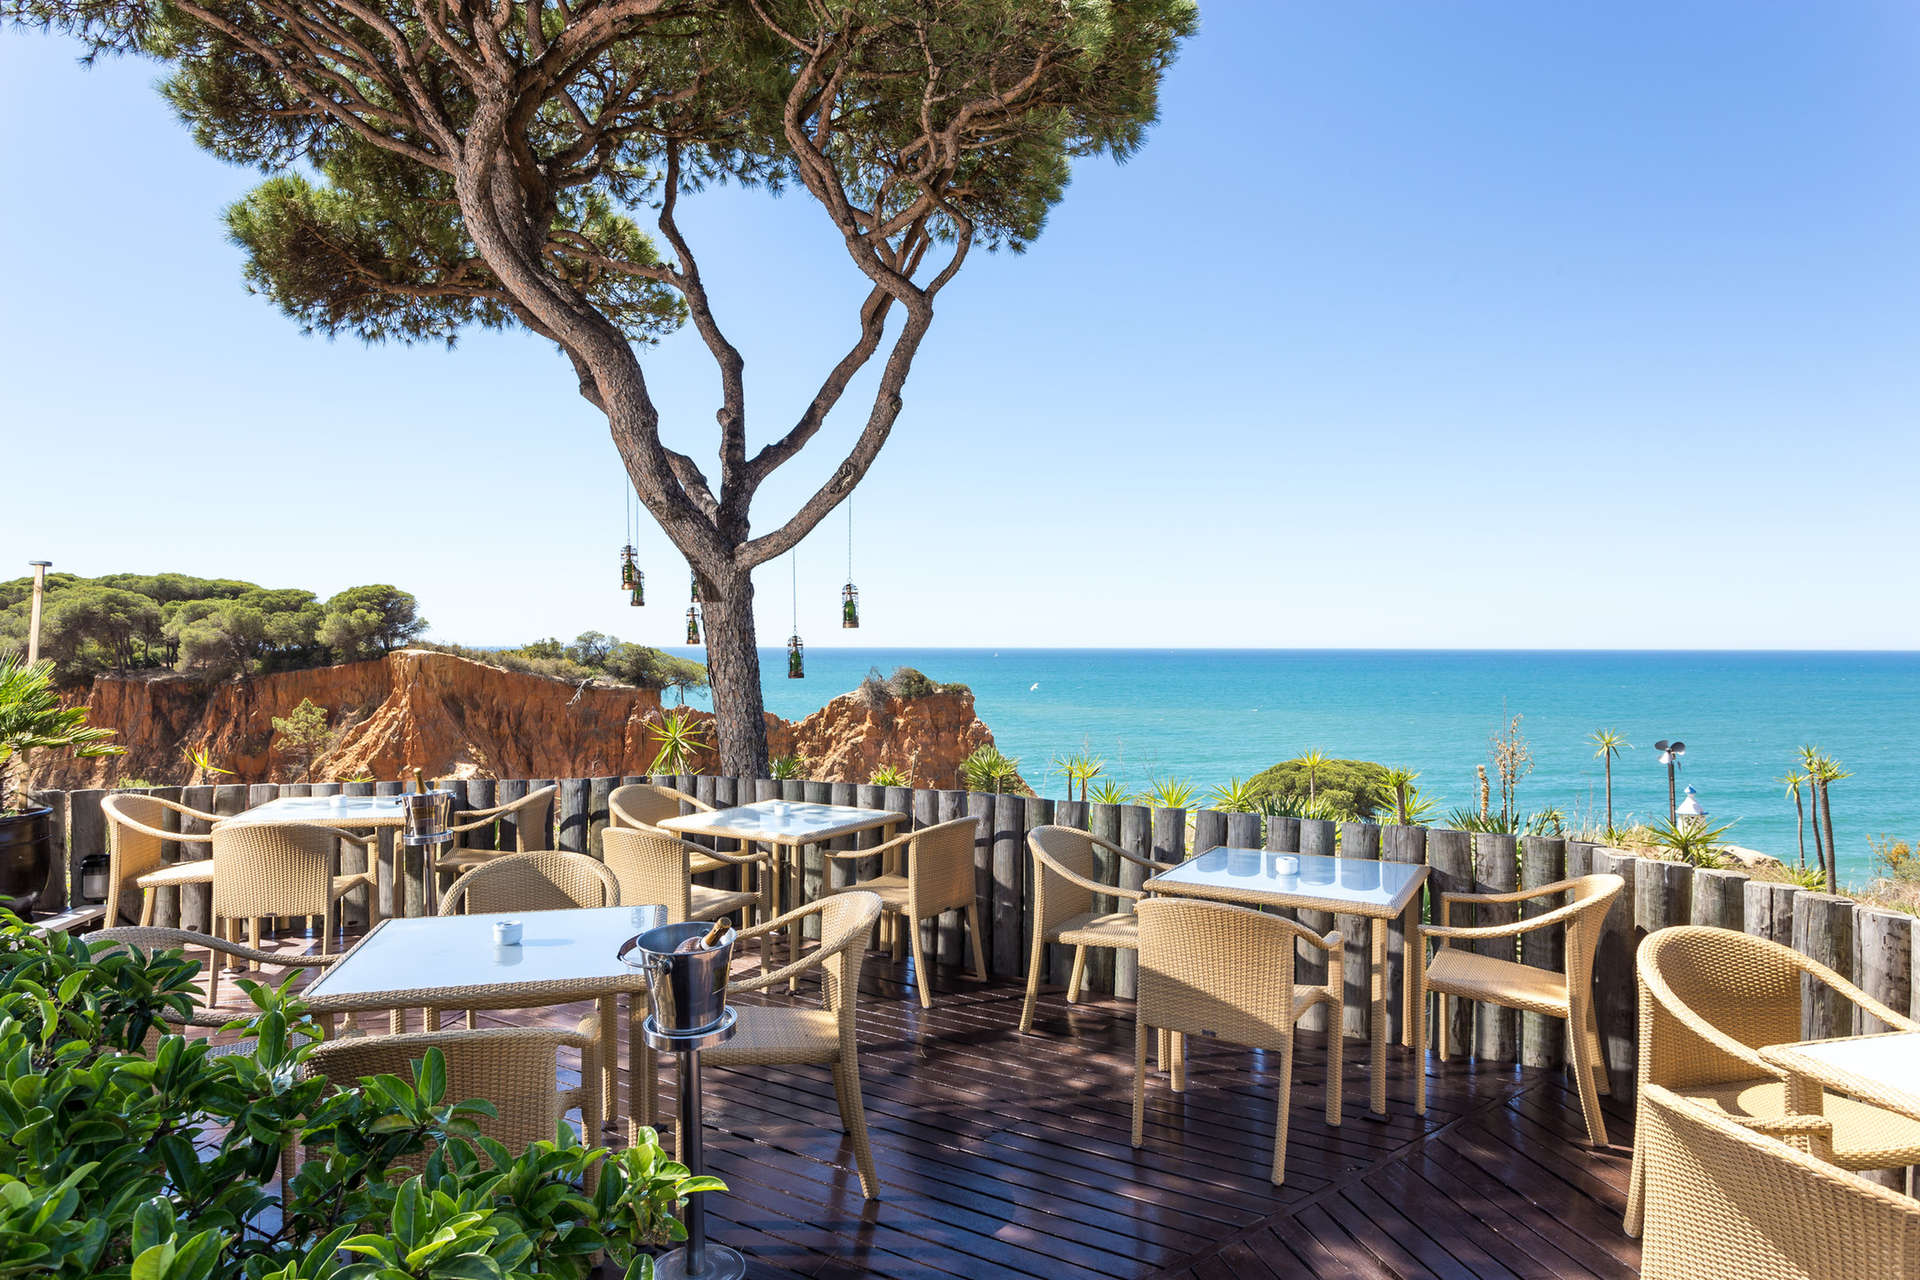 Hotel Pine Cliffs, a Luxury Collection Resort, Algarve oferuje gościom niezrównane widoki na plaże Praia da Falésia